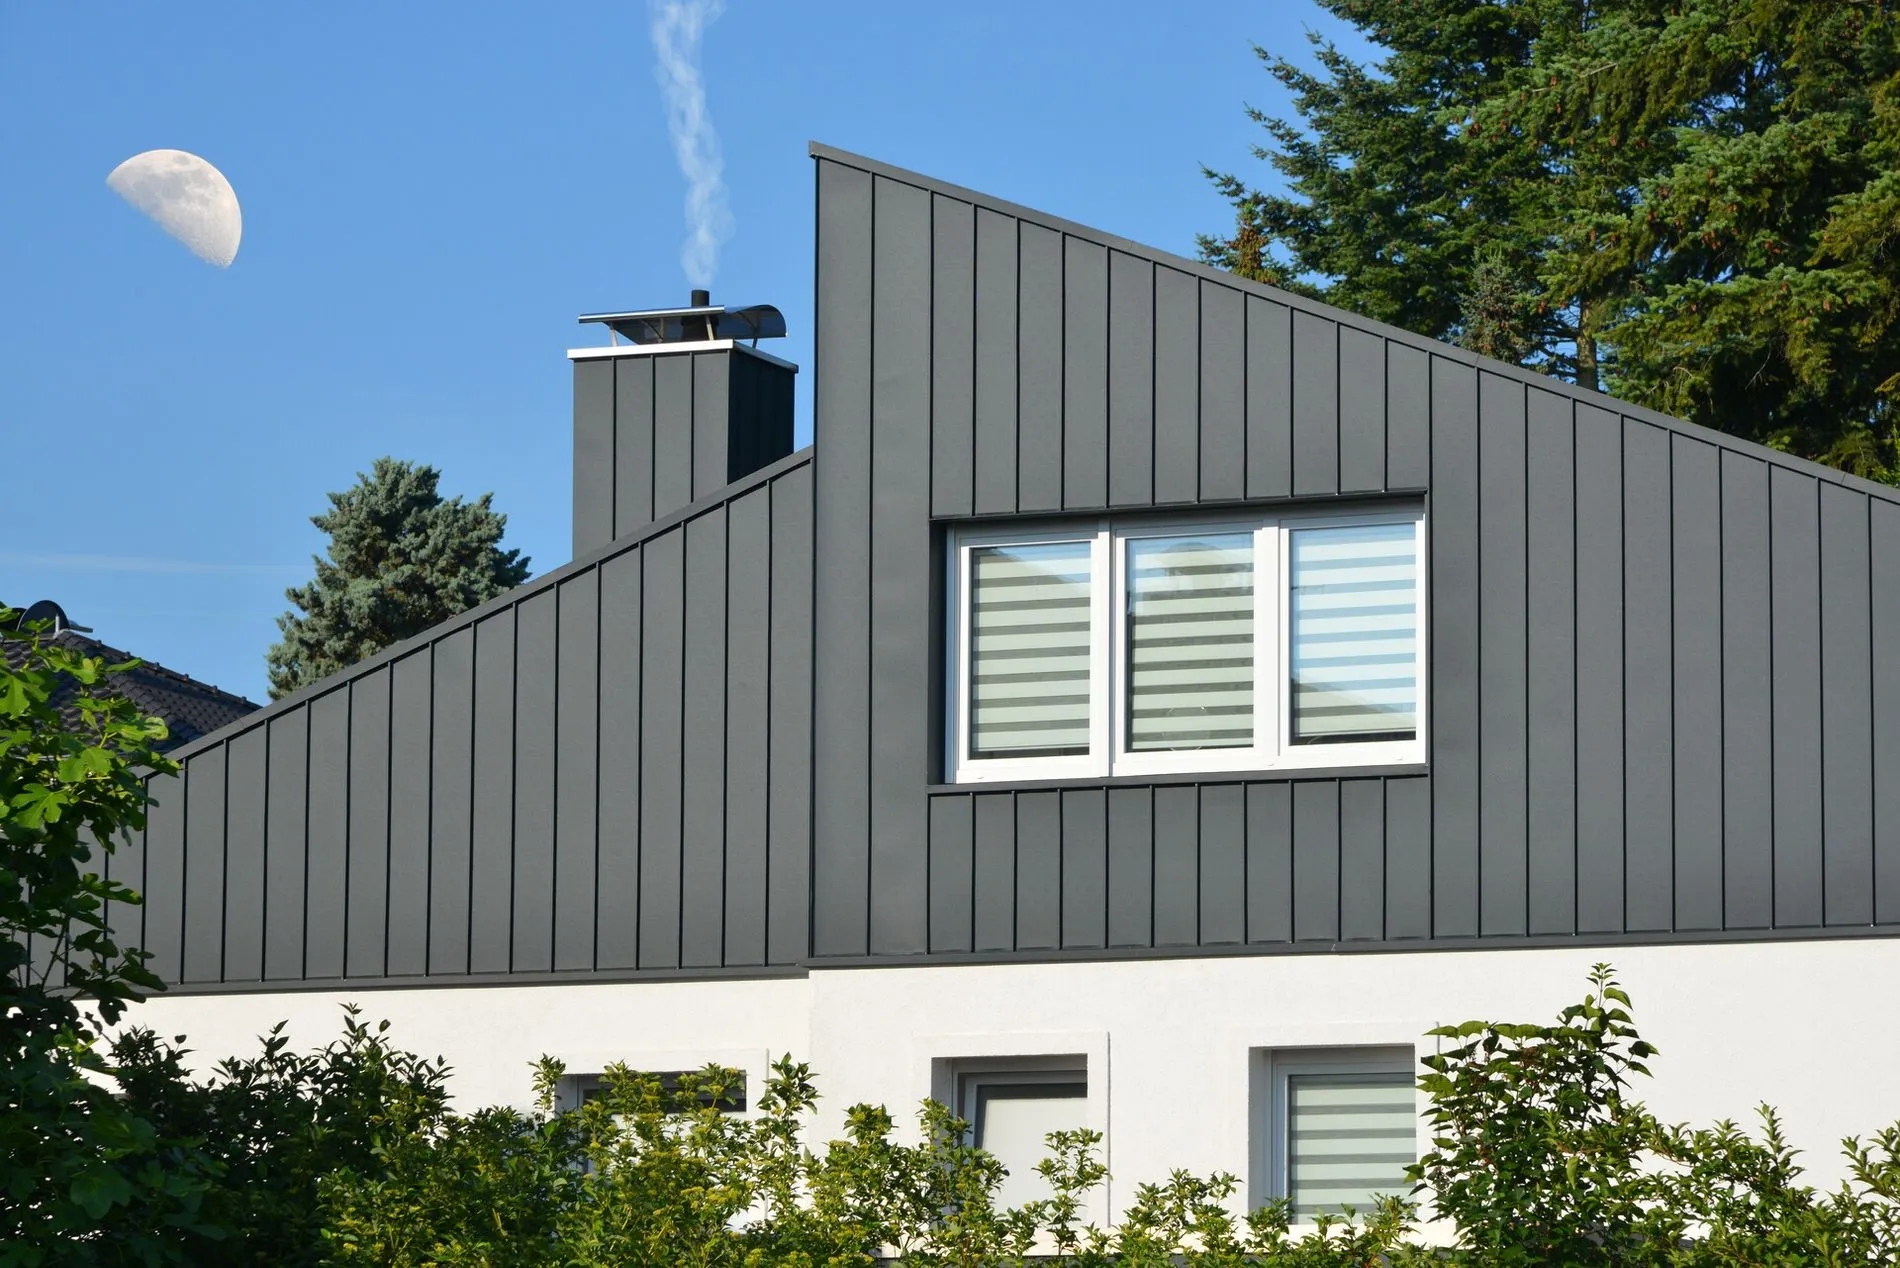 Fassaden- und Schornstein-Verkleidung eines modernen WohngebÃ¤udes aus dunkelgrau beschichtetem Stehfalz-Metall und Fenster mit Sichtschutzstreifen, .jpg